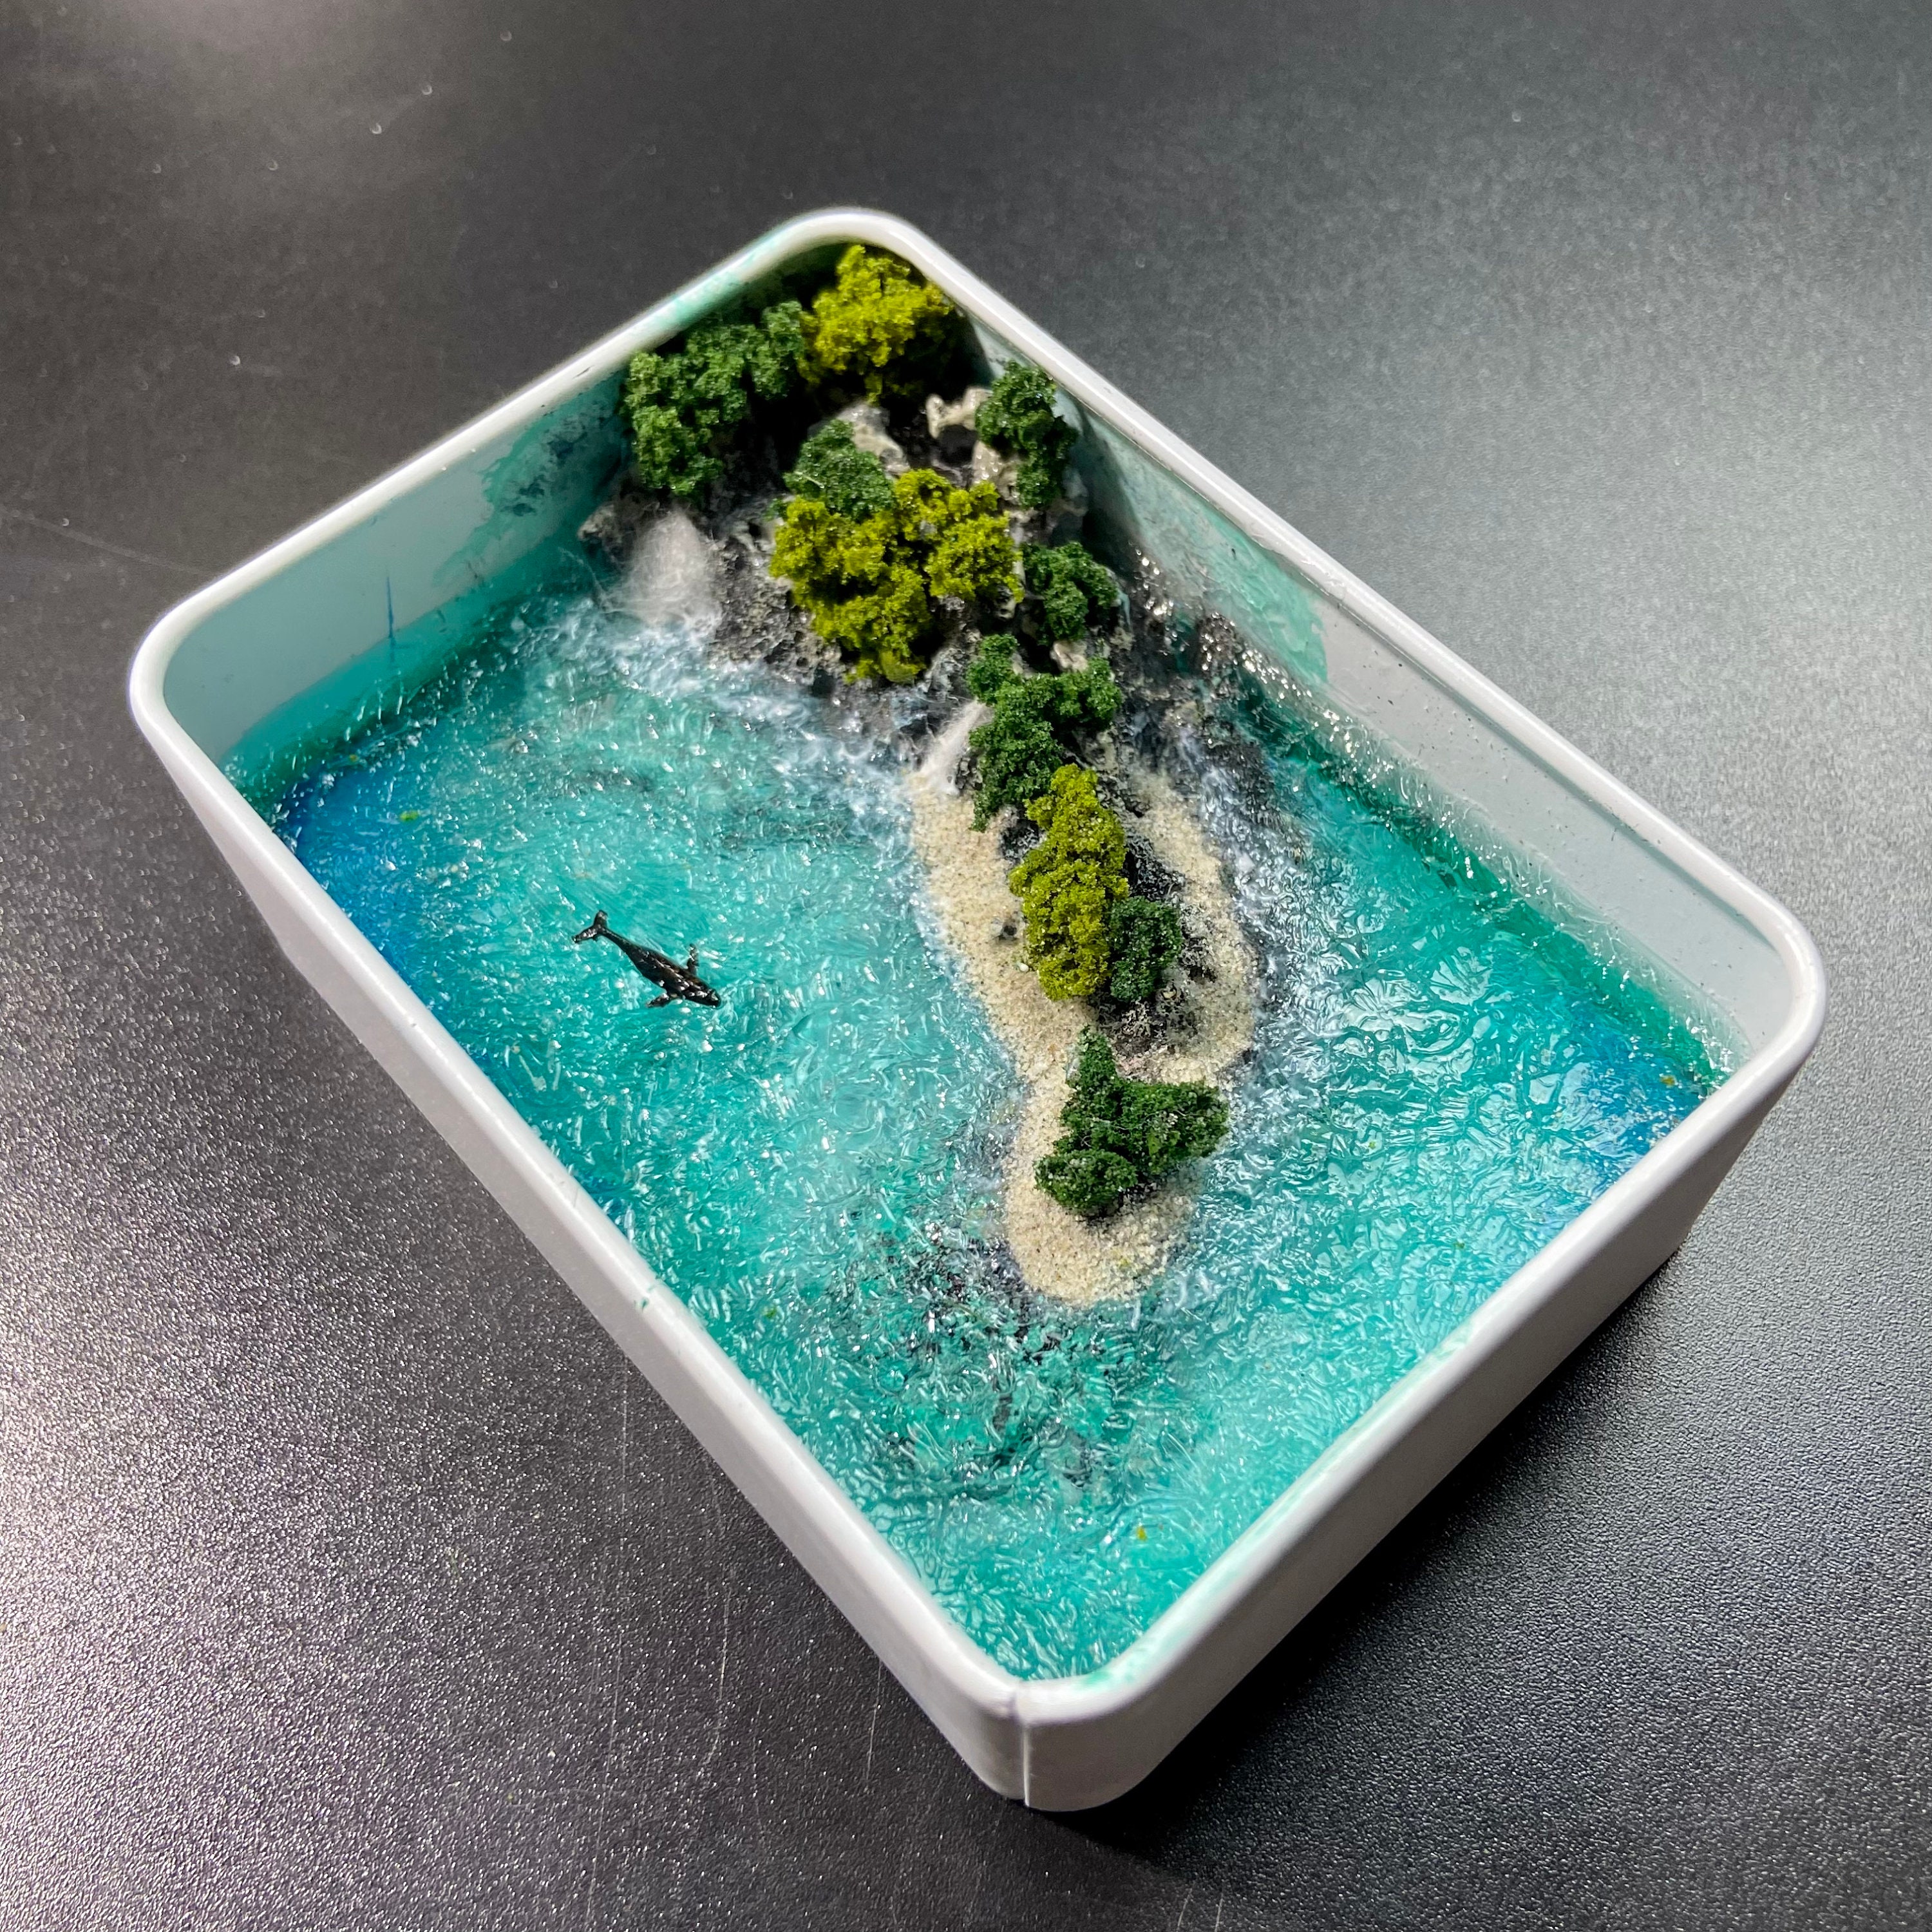 Lot de 22 Micro-paysages de Plage Miniatures Miniature de Plage Jouets  Miniatures Décoration Décoration de Plage d'océan DIY Accessoire pour